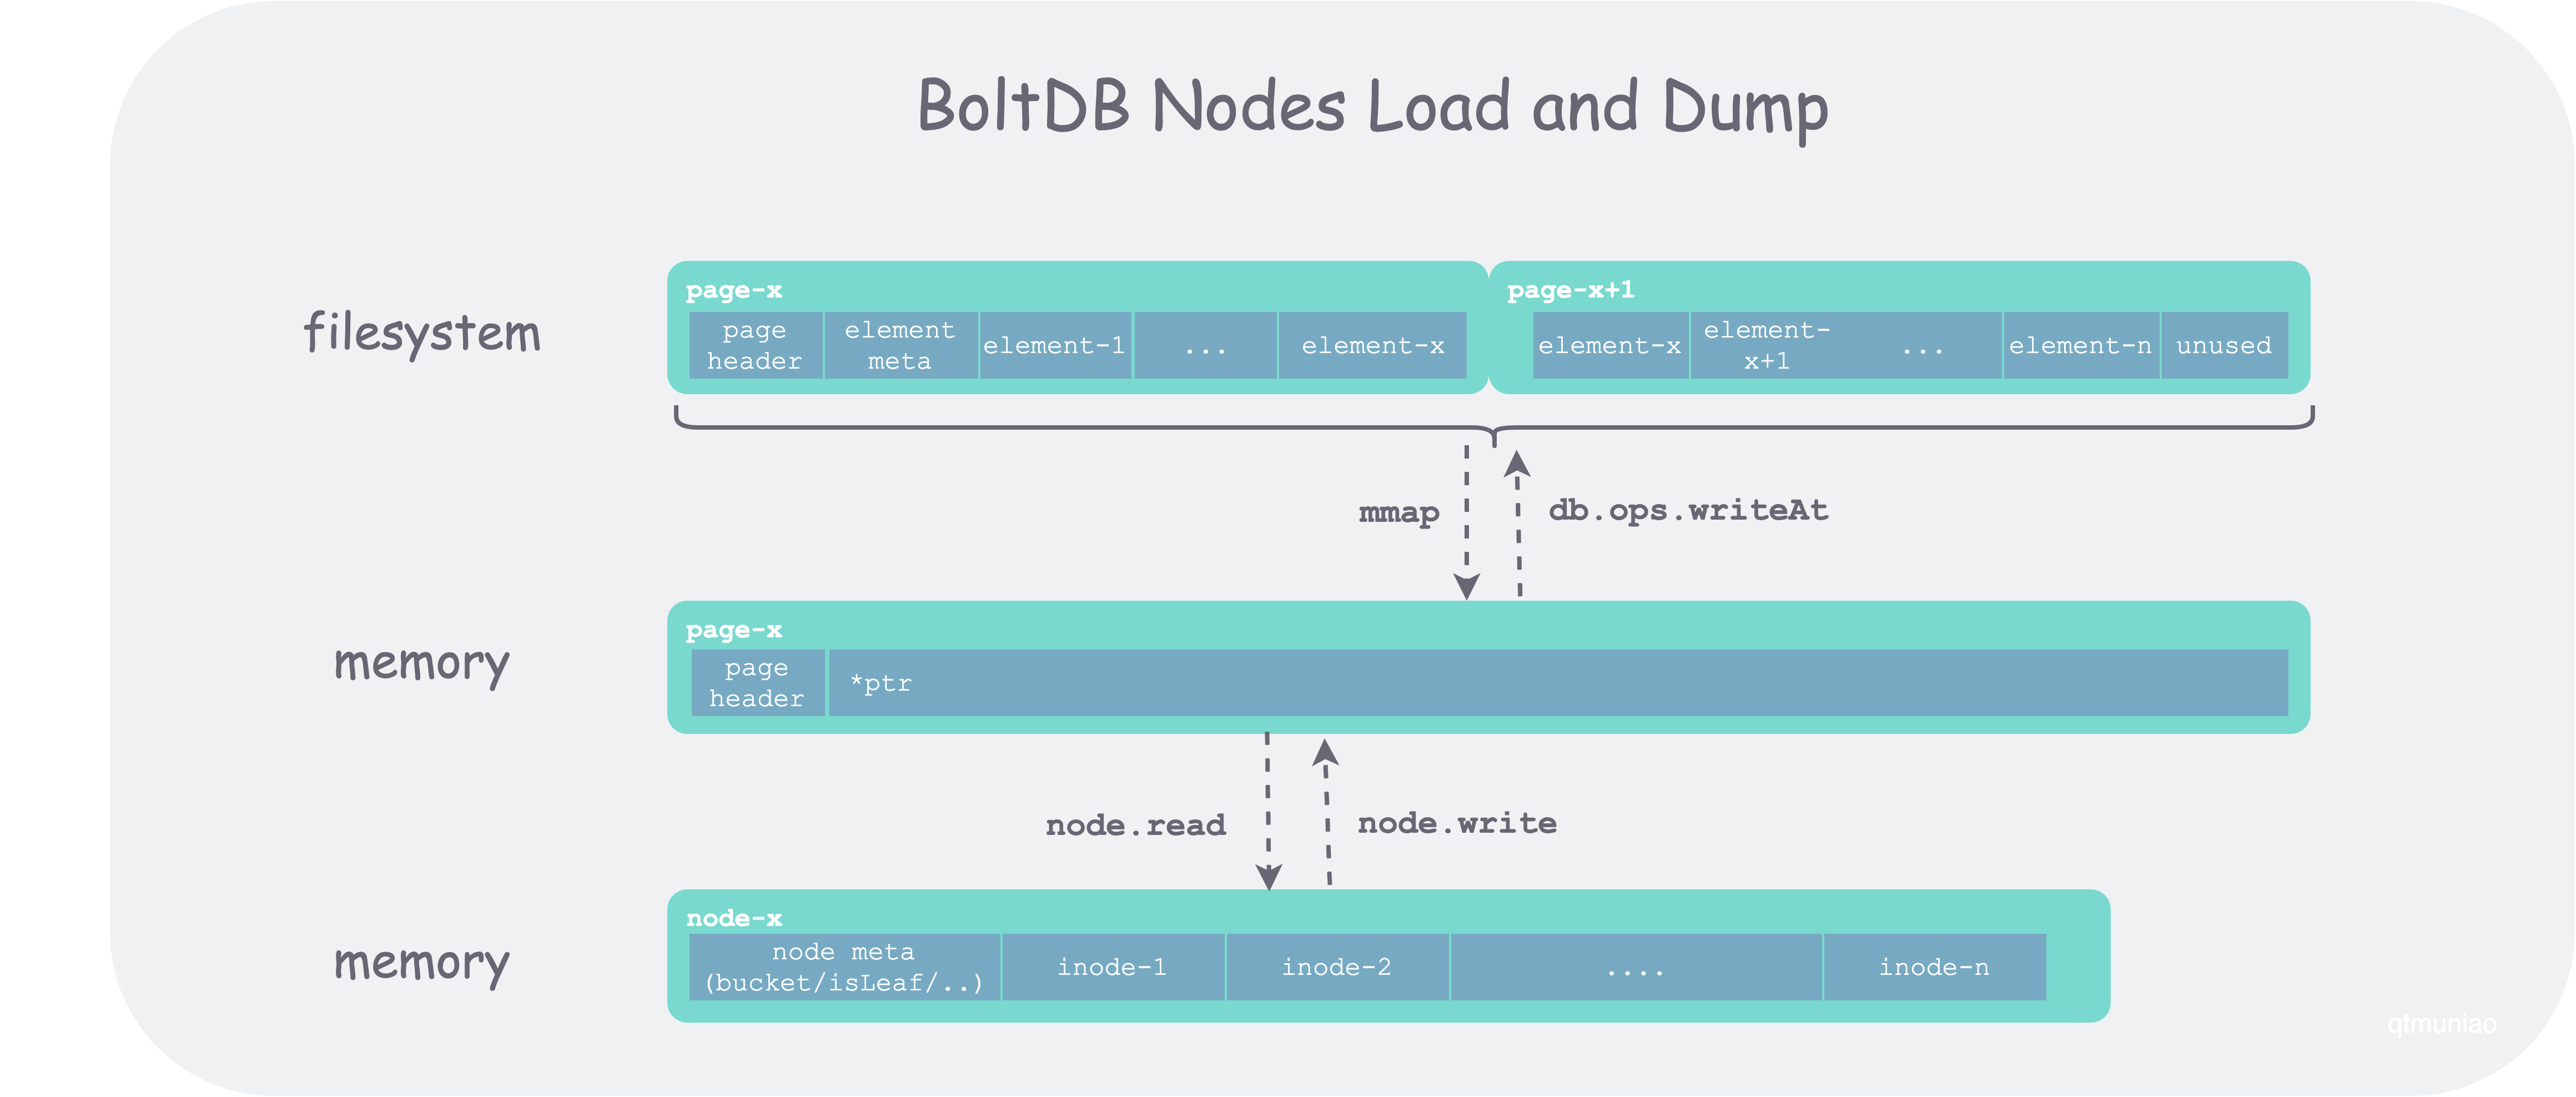 boltdb-node-load-and-dump.png